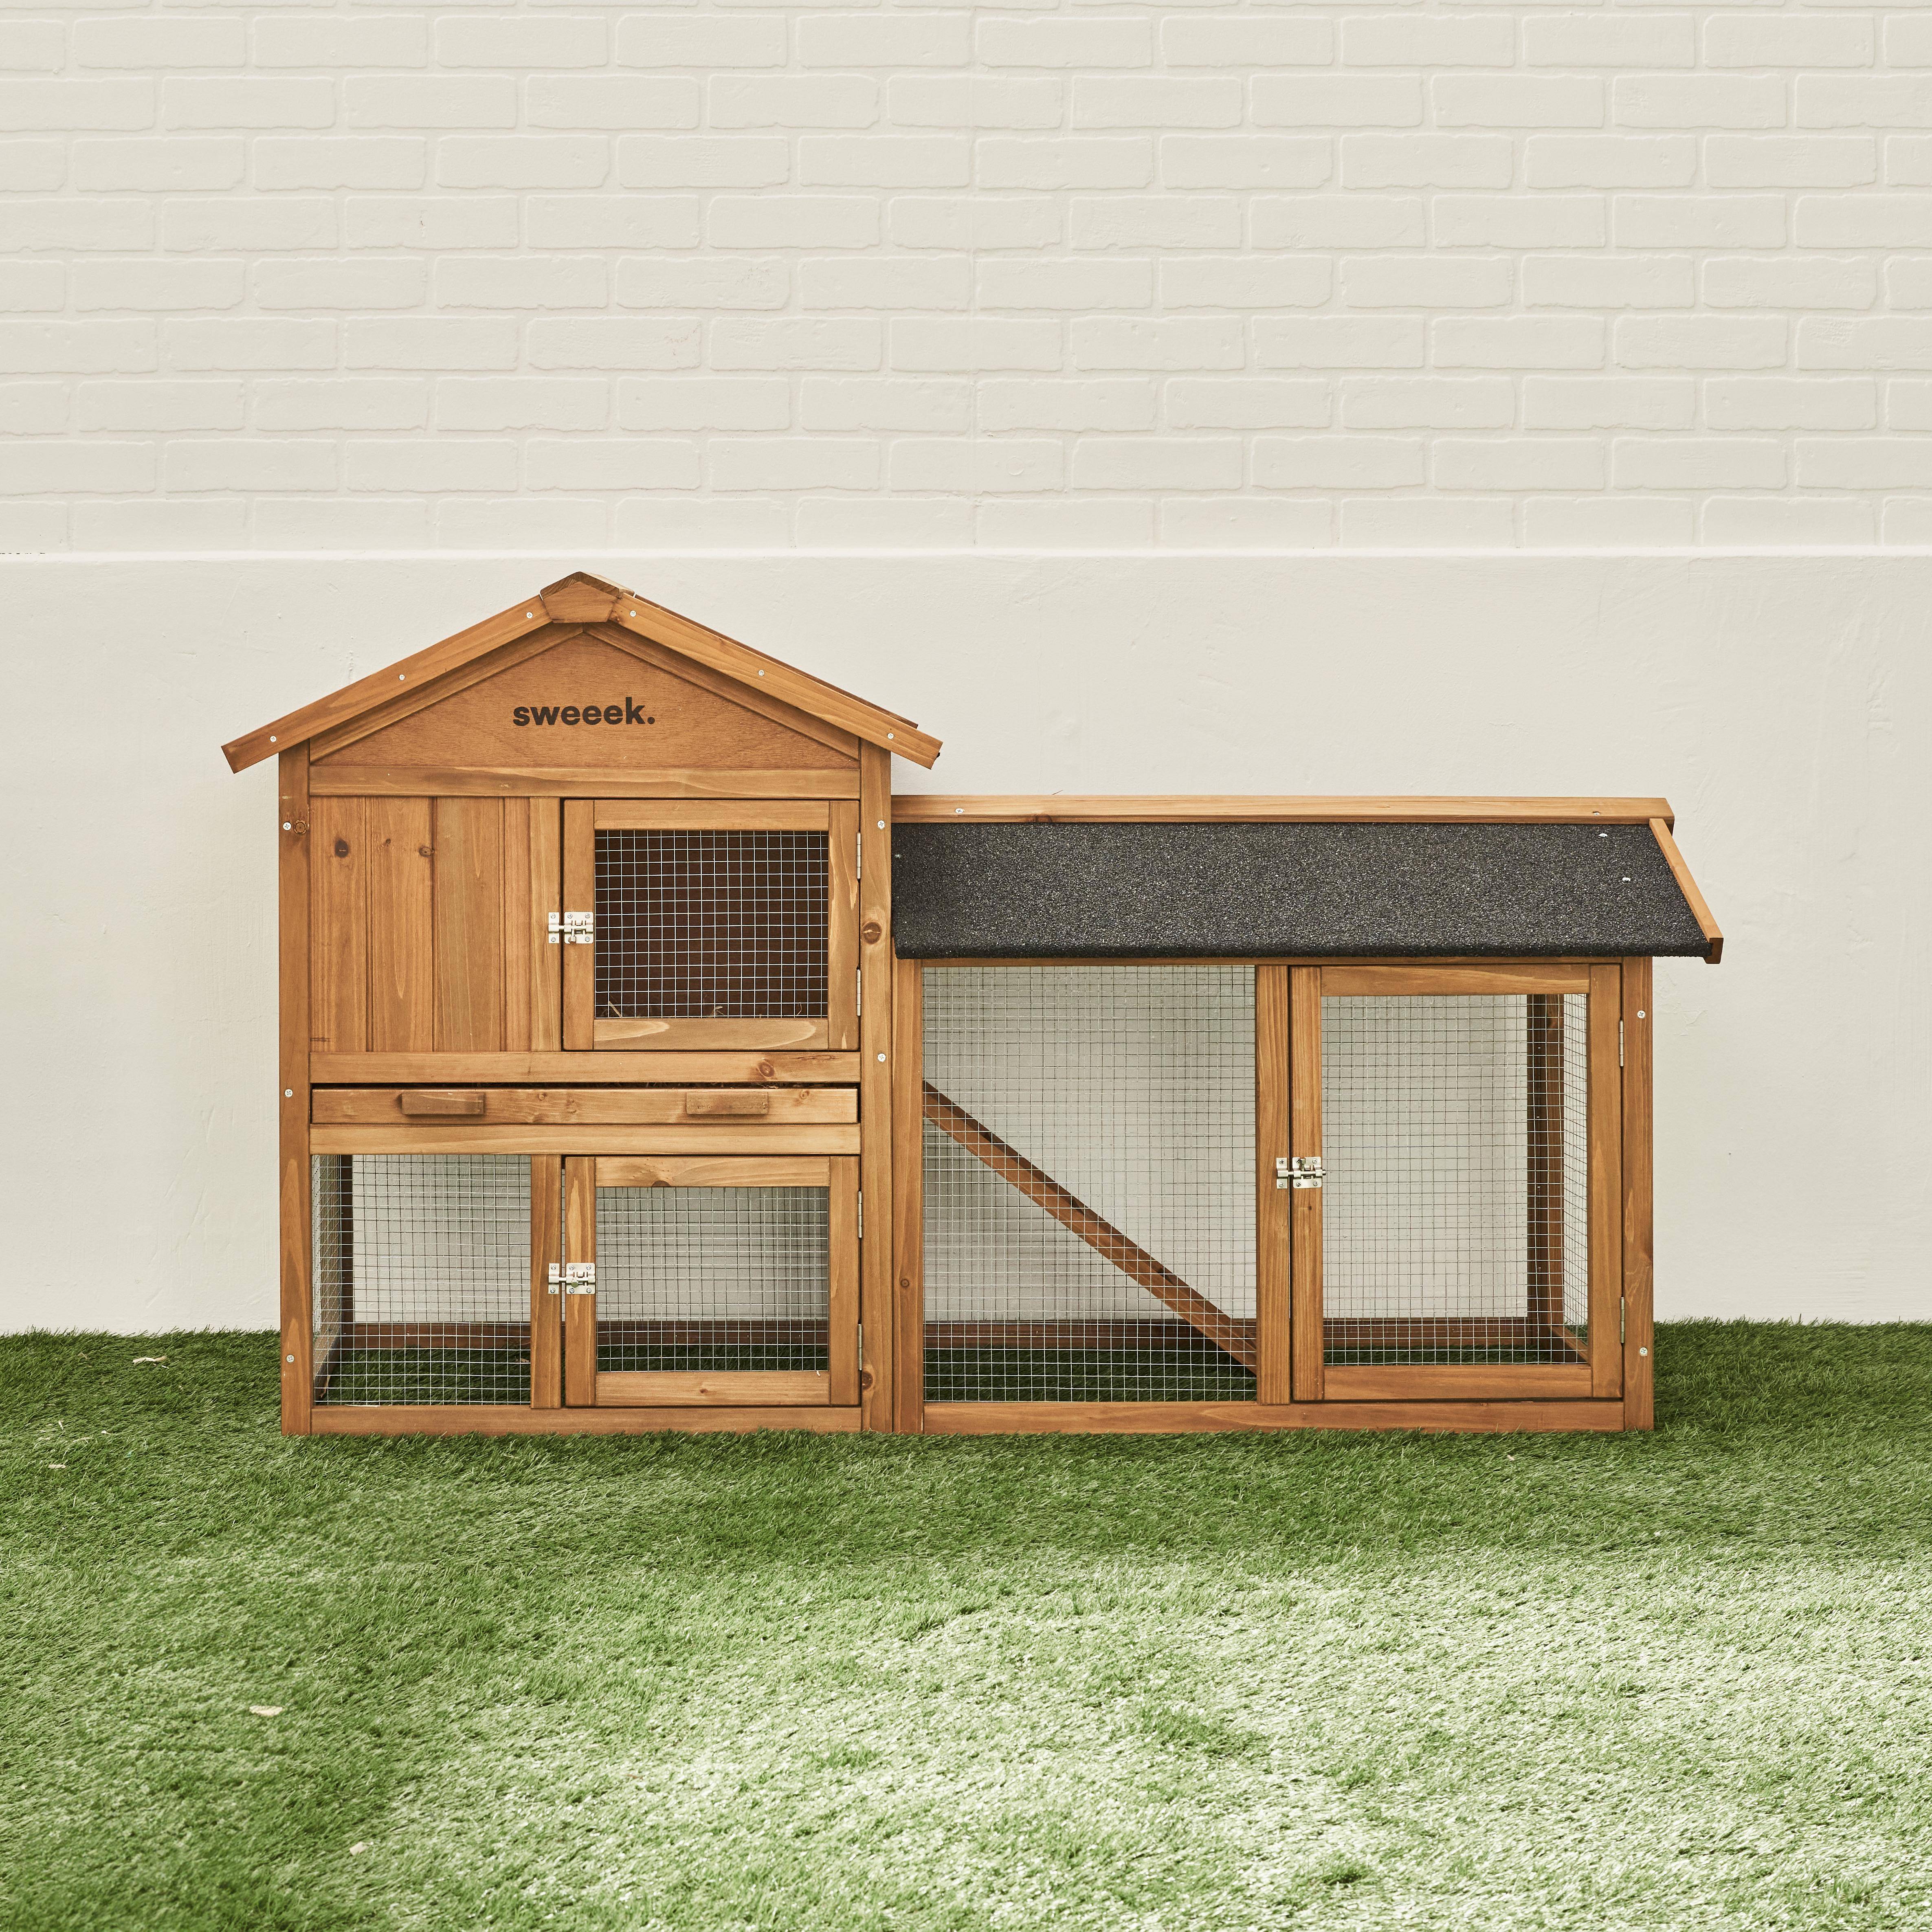 HOTOT Holzhaus für Kaninchen und andere Nagetiere, 4 Kaninchen, Kaninchenkäfig mit Gehege, Innen- und Außenbereich, Hühnerhaus,sweeek,Photo2